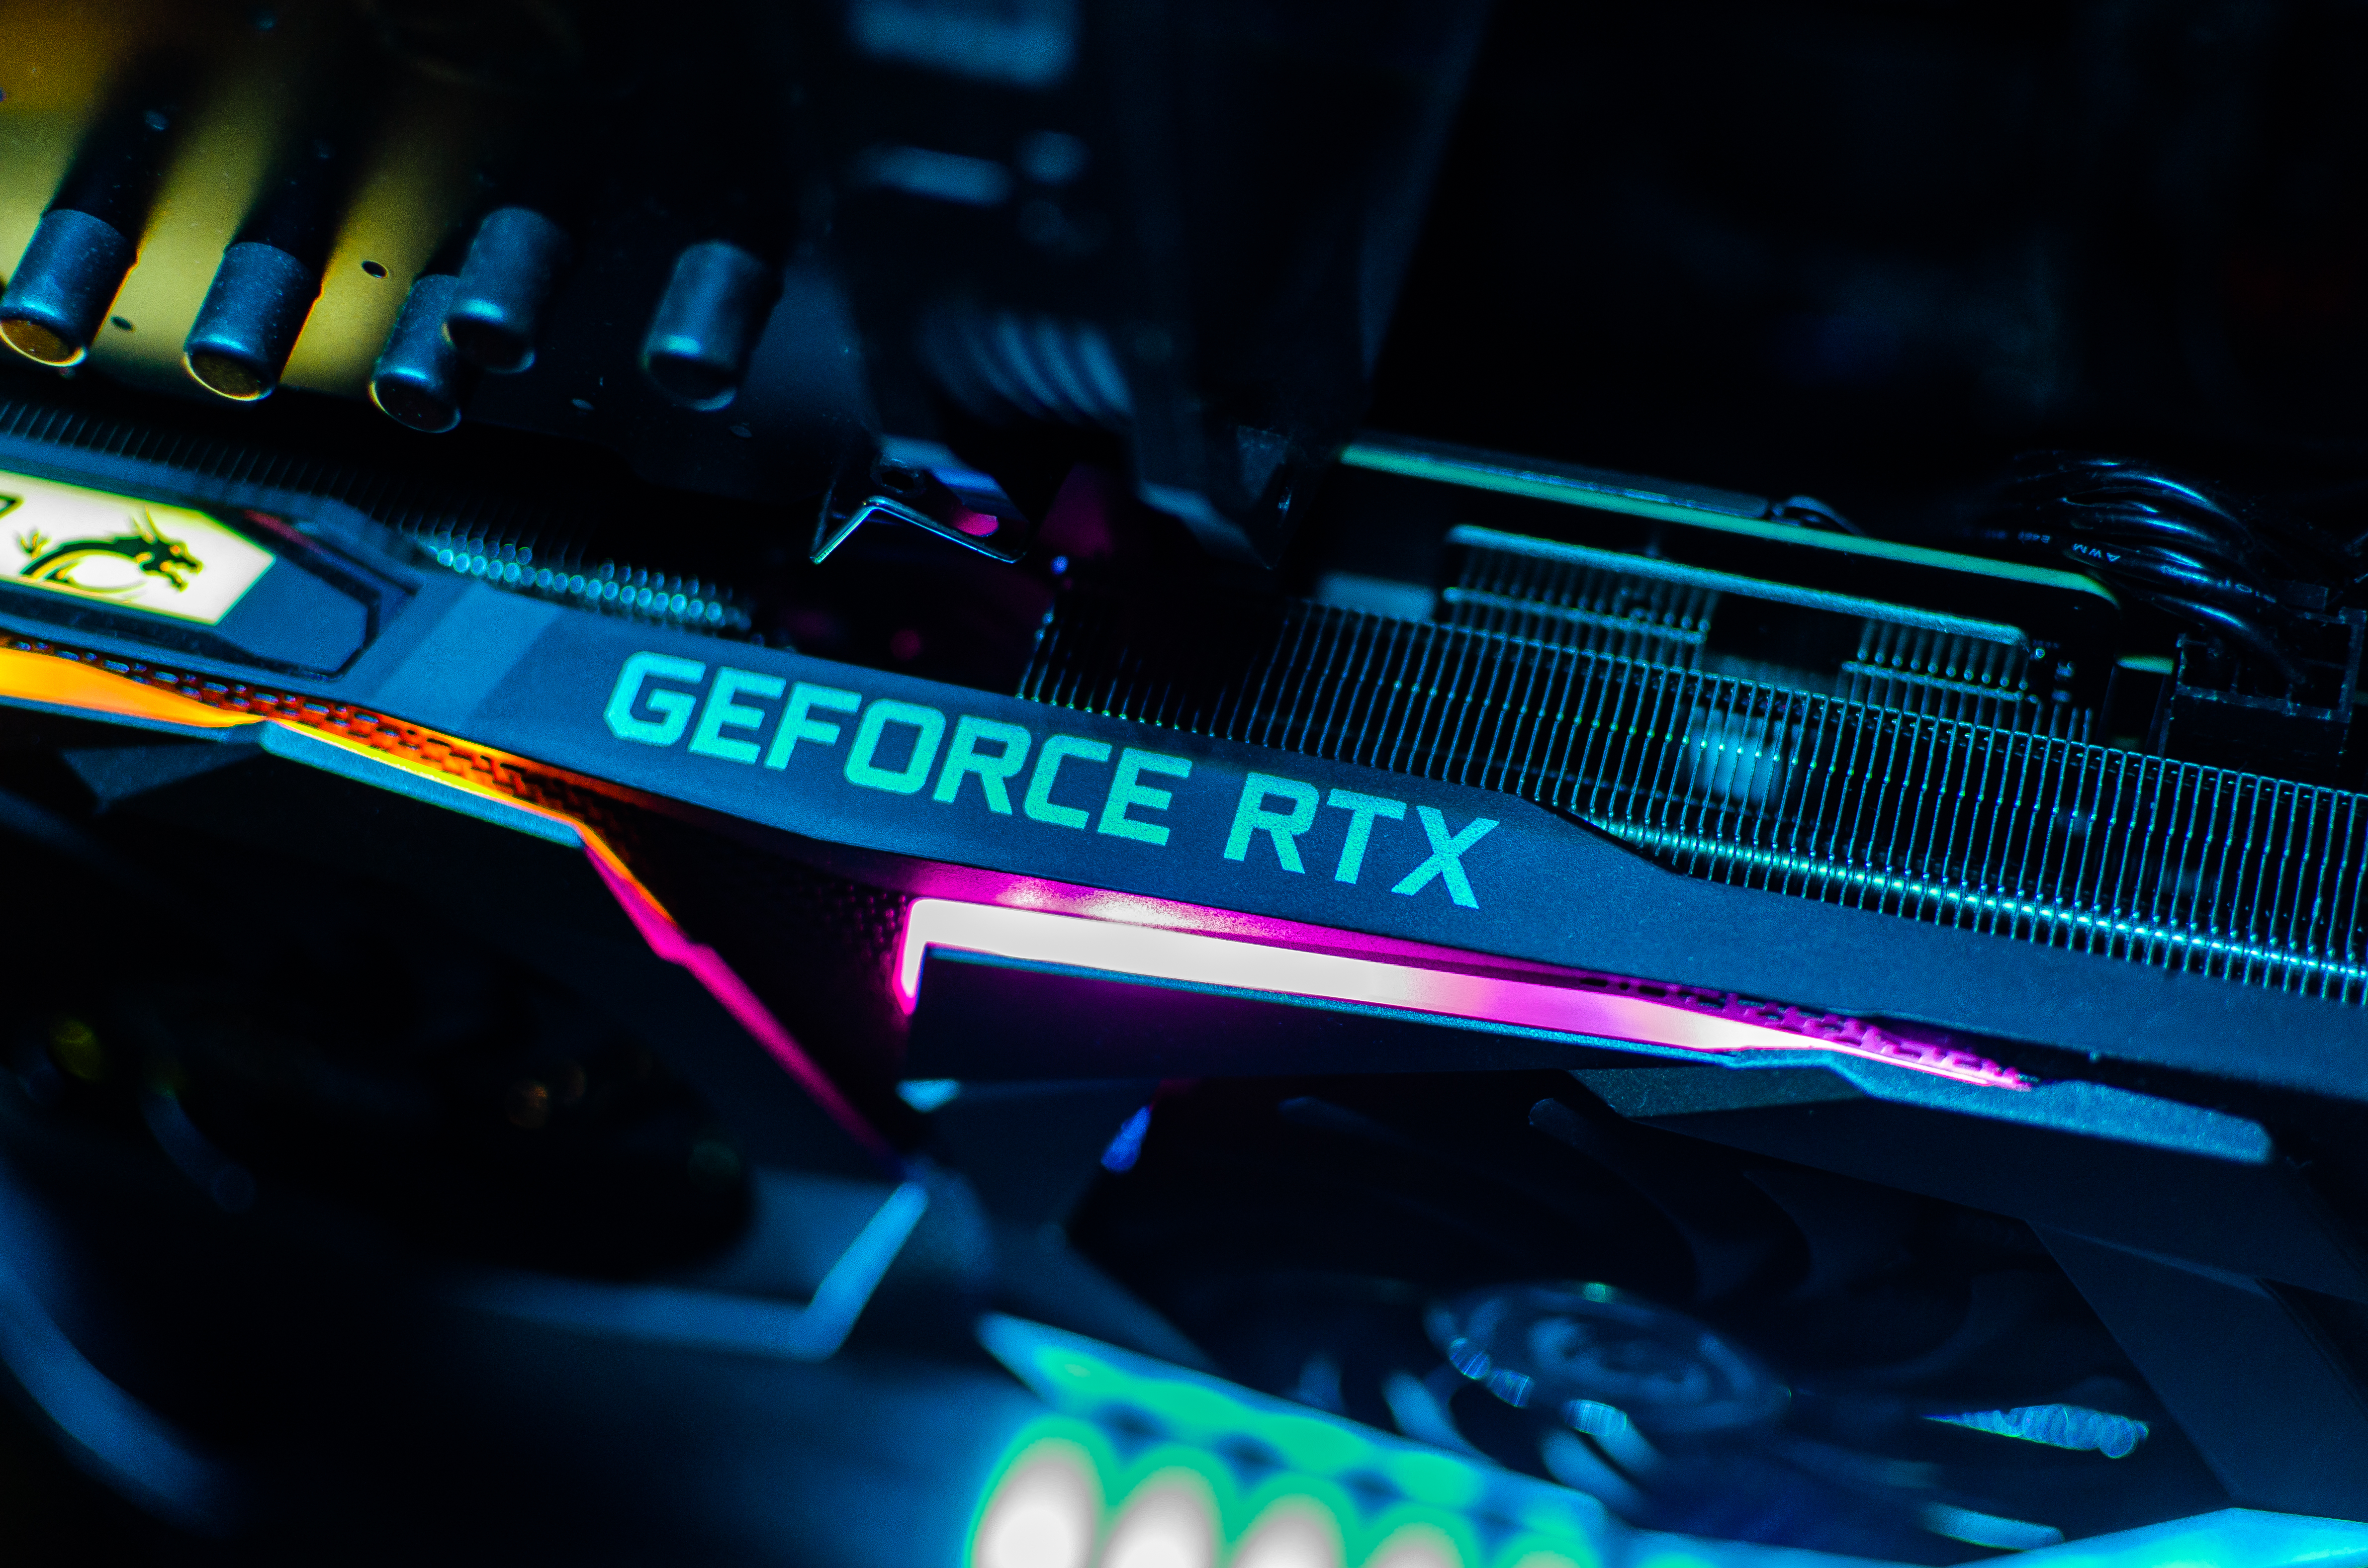 کارت گرافیک Nvidia GeForce RTX از کناره مشاهده می شود.